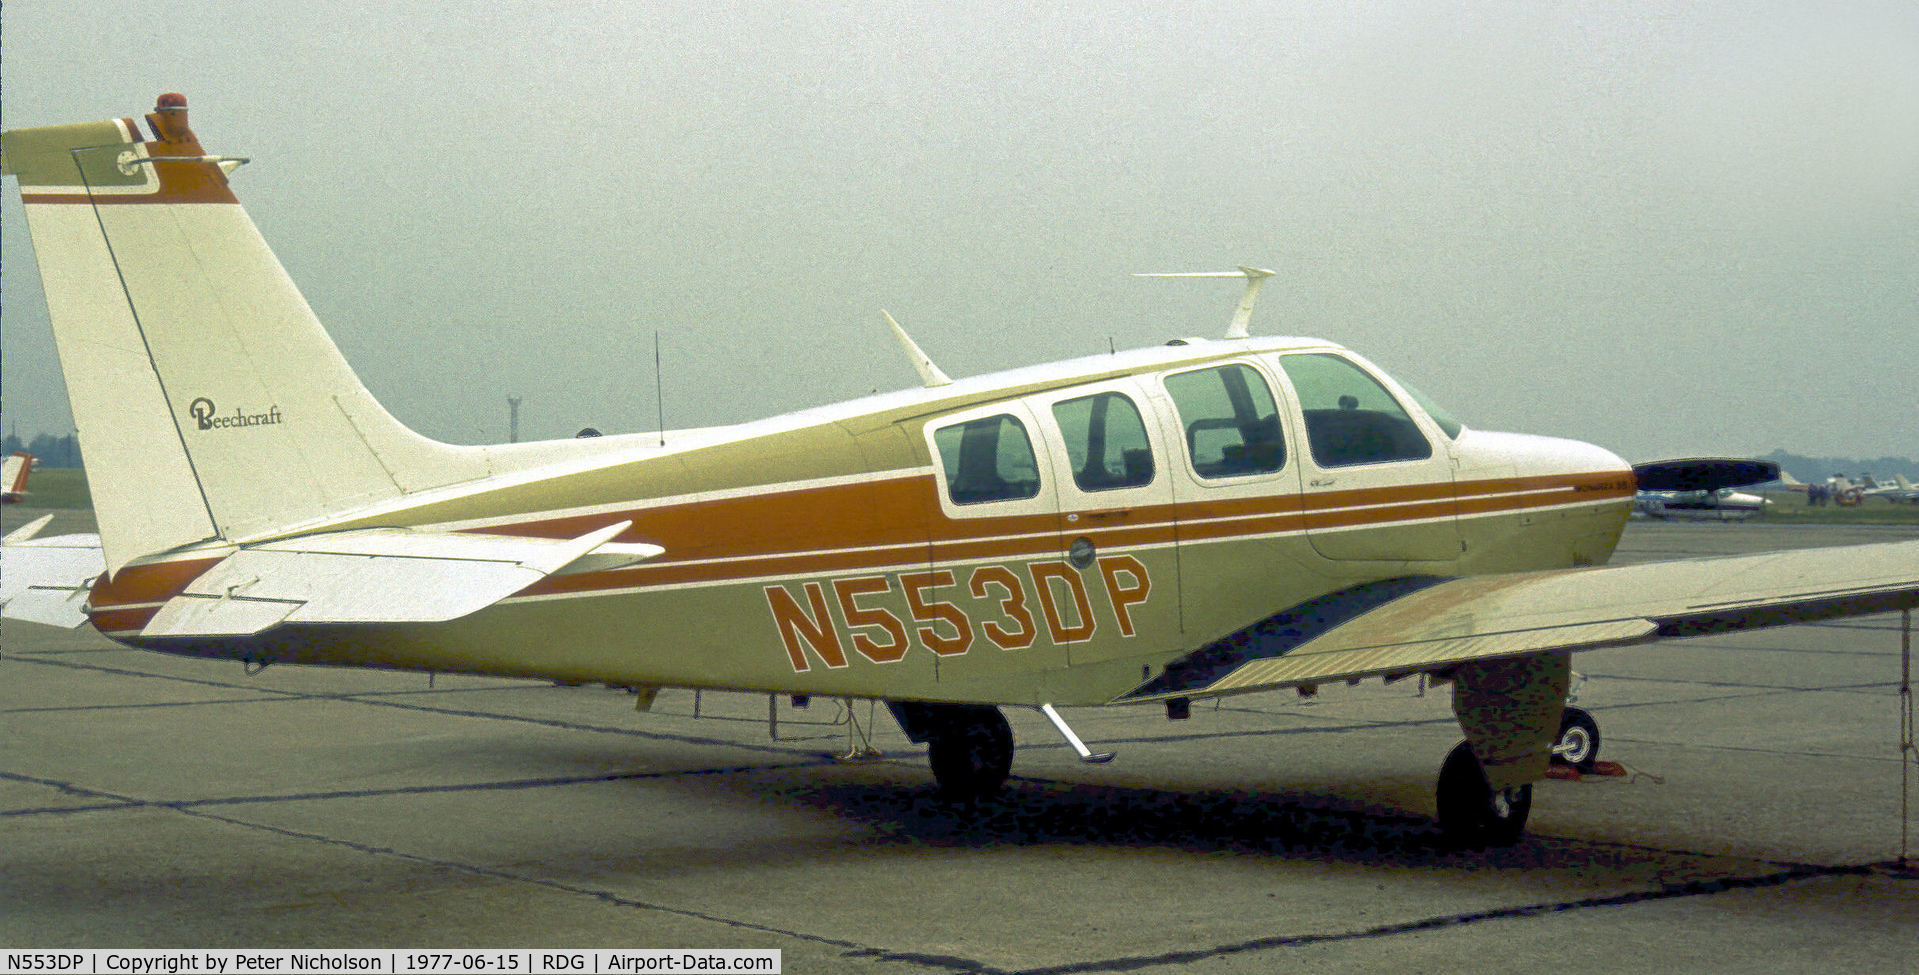 N553DP, 1969 Beech 36 Bonanza C/N E-146, This Beech A36 Bonanza was seen at the 1977 Reading Airshow.